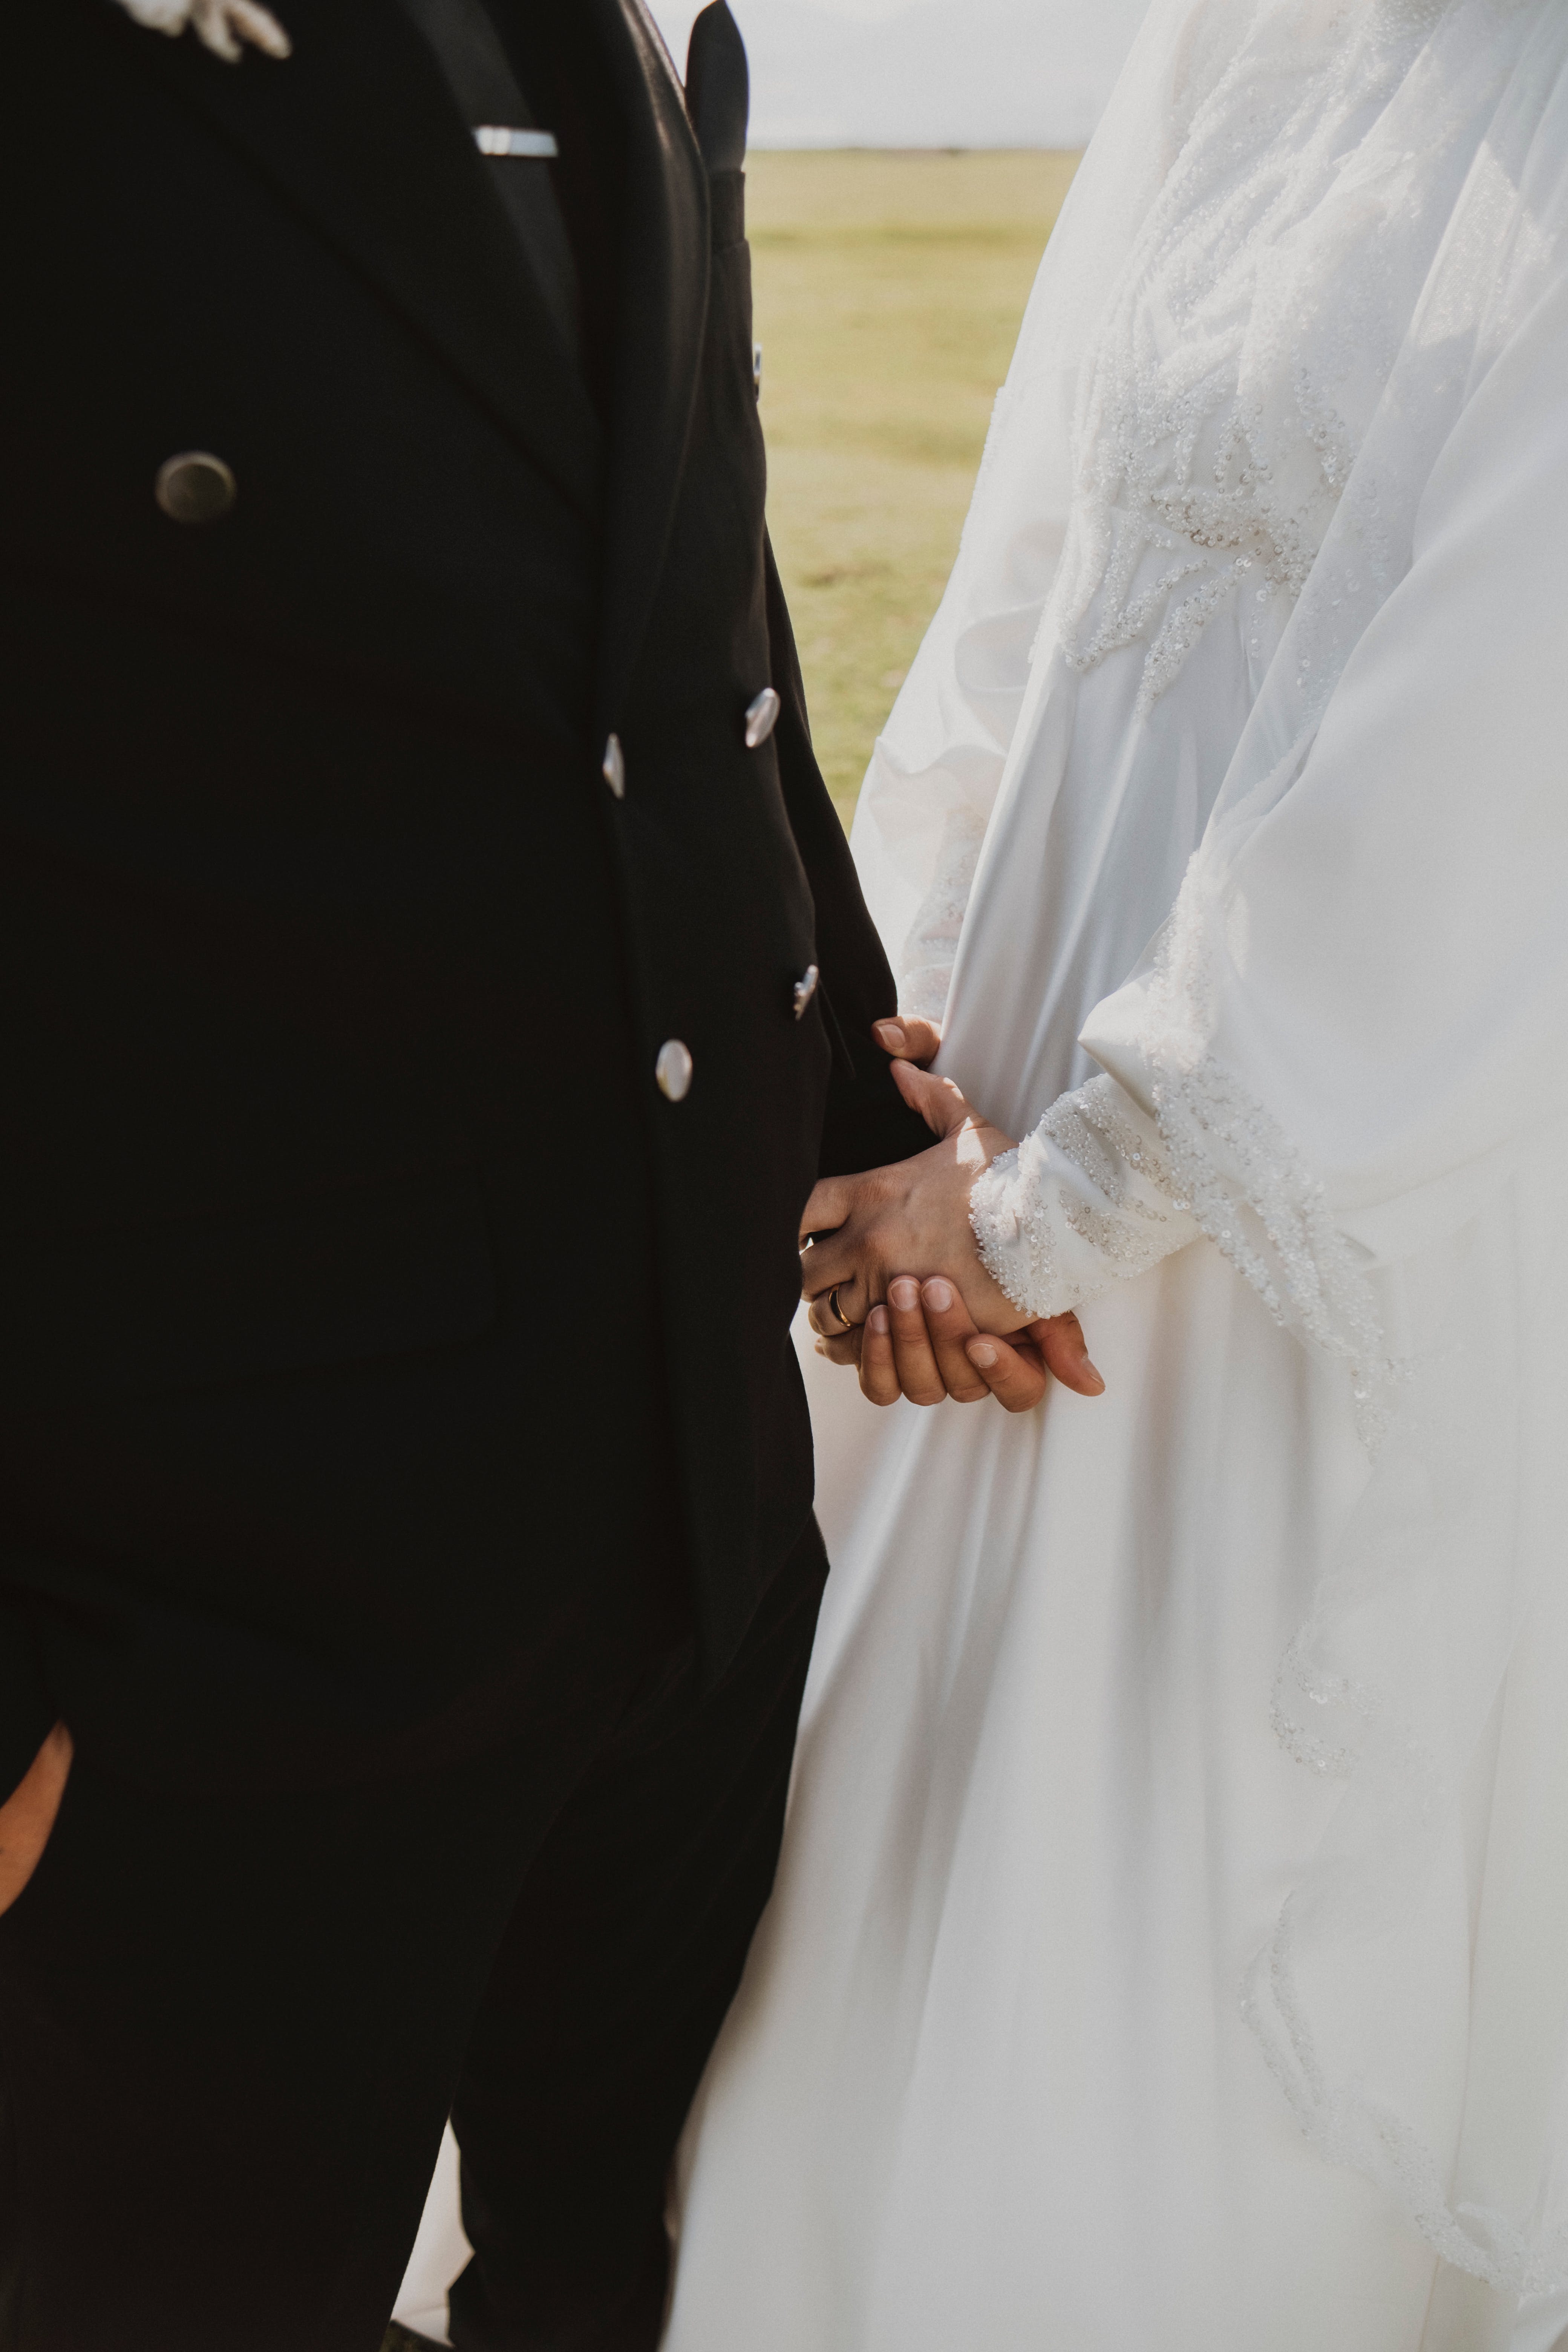 Groom and bride | Source: Pexels